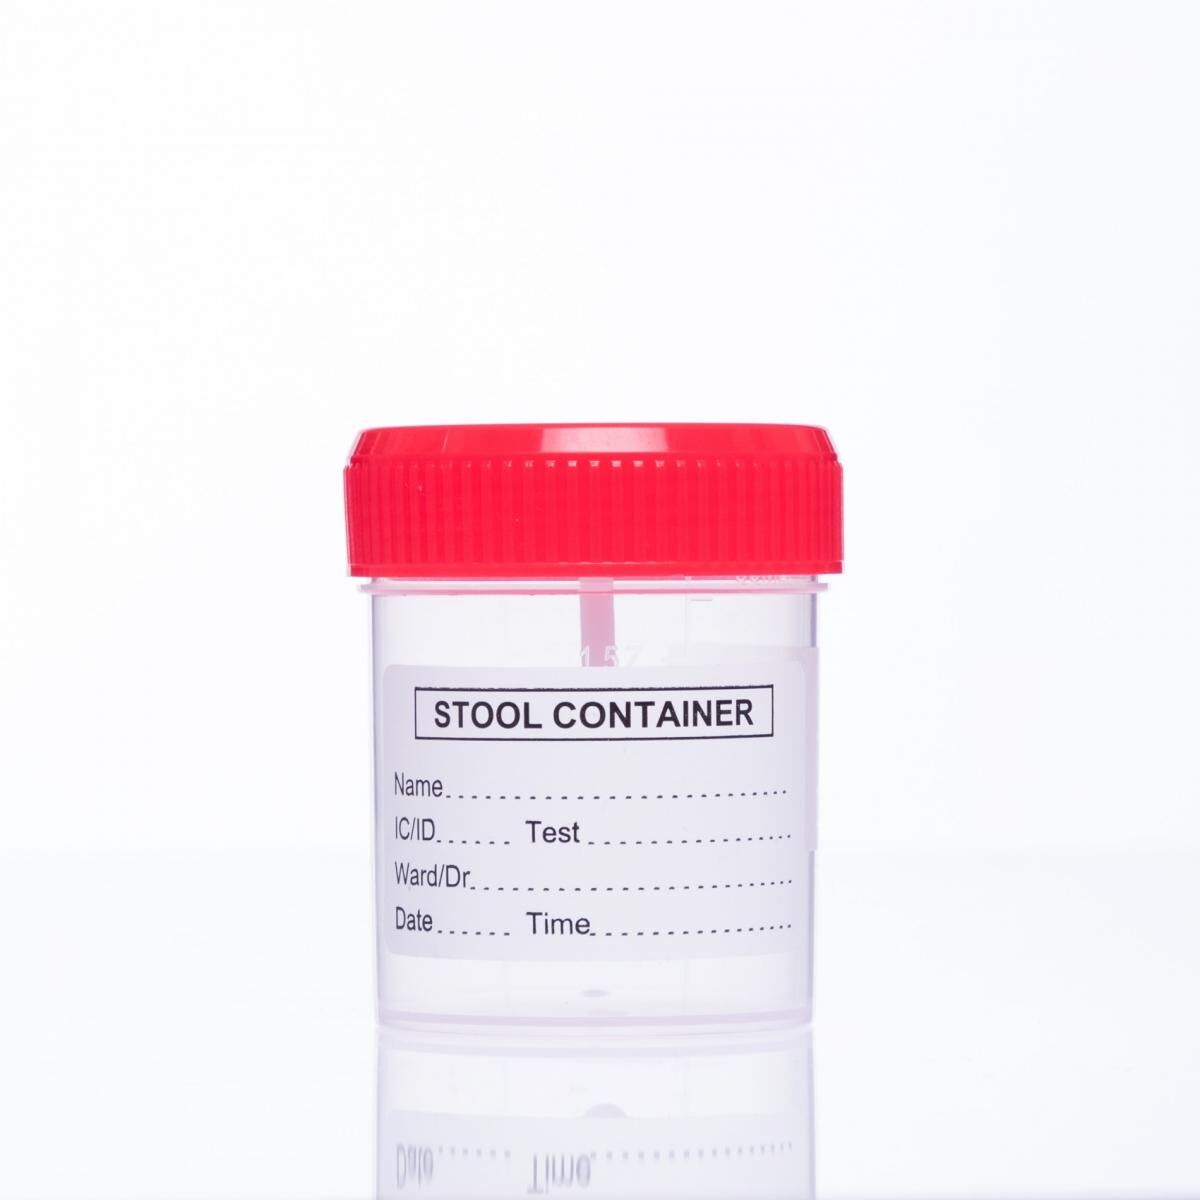 Контейнер для биоматериала Stool container 60мл, Sterile